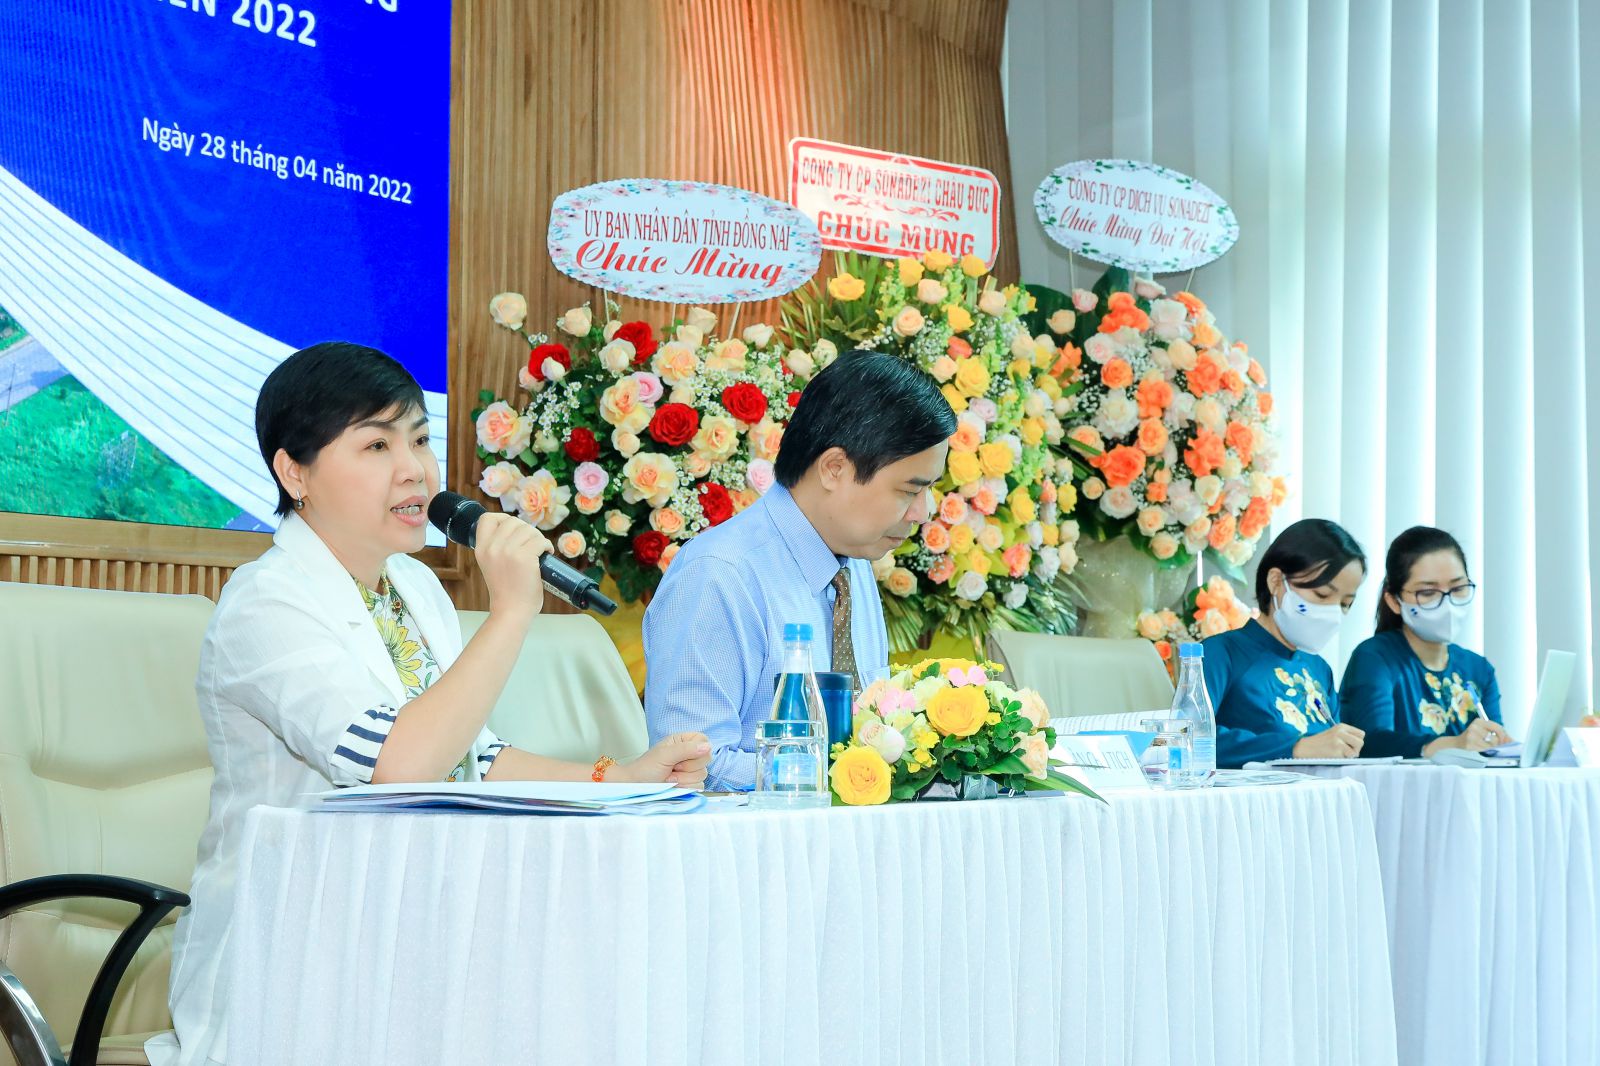 Chủ tịch HĐQT Sonadezi Đỗ Thị Thu Hằng chia sẻ với cổ đông về mục tiêu phát triển của Tổng công ty trong năm 2022